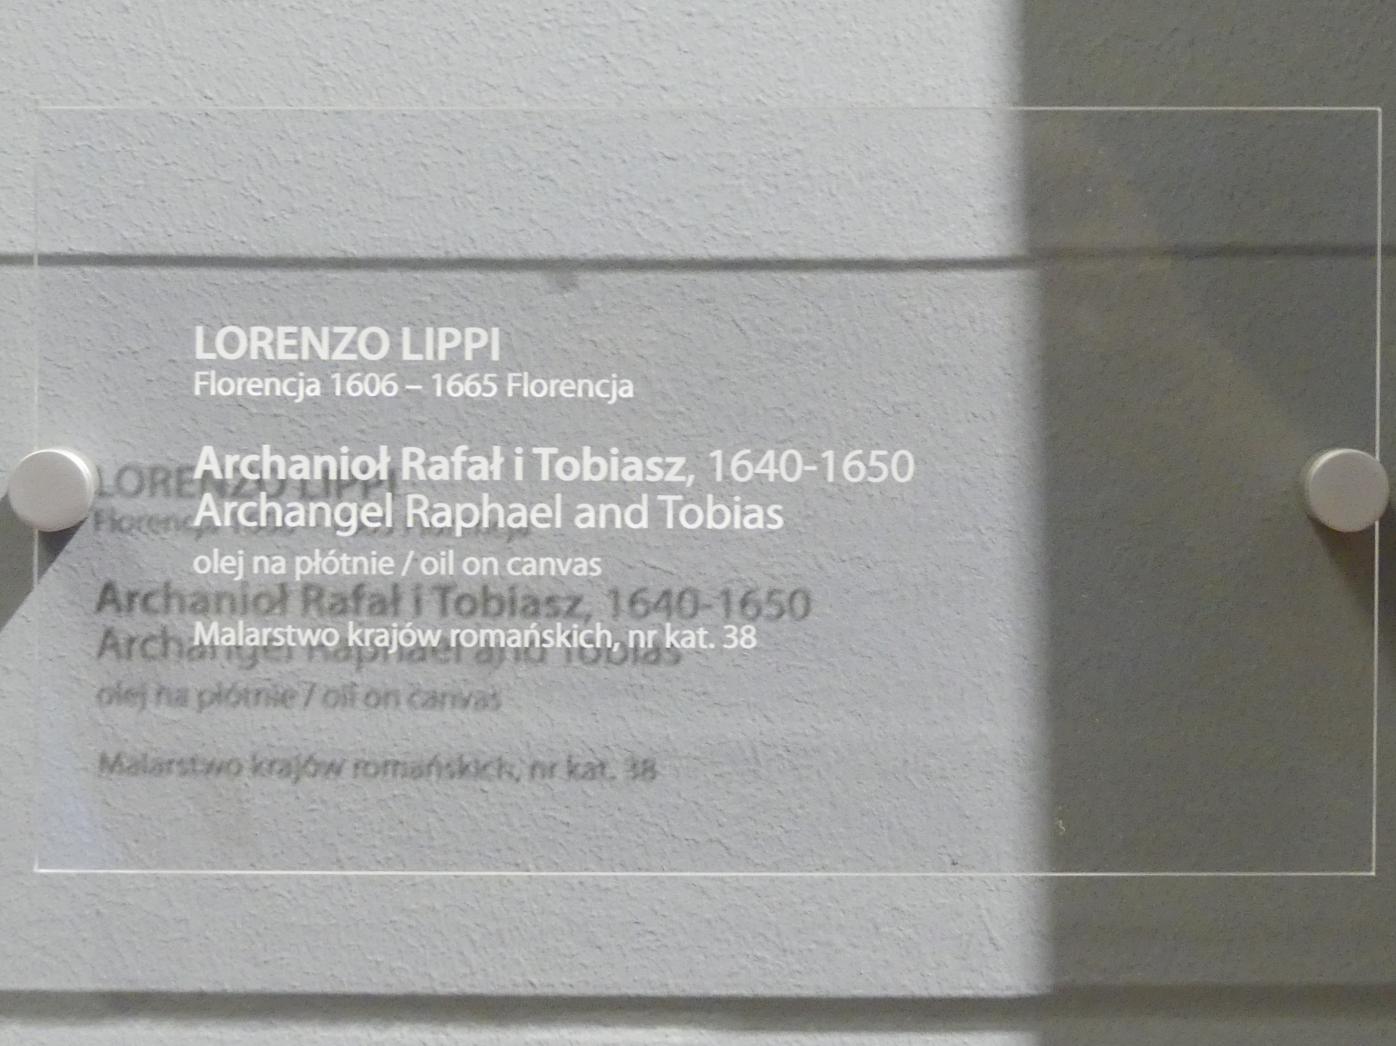 Lorenzo Lippi (1644–1660), Erzengel Raphael und Tobias, Breslau, Nationalmuseum, 2. OG, europäische Kunst 15.-20. Jhd., Saal 5, 1640–1650, Bild 2/2